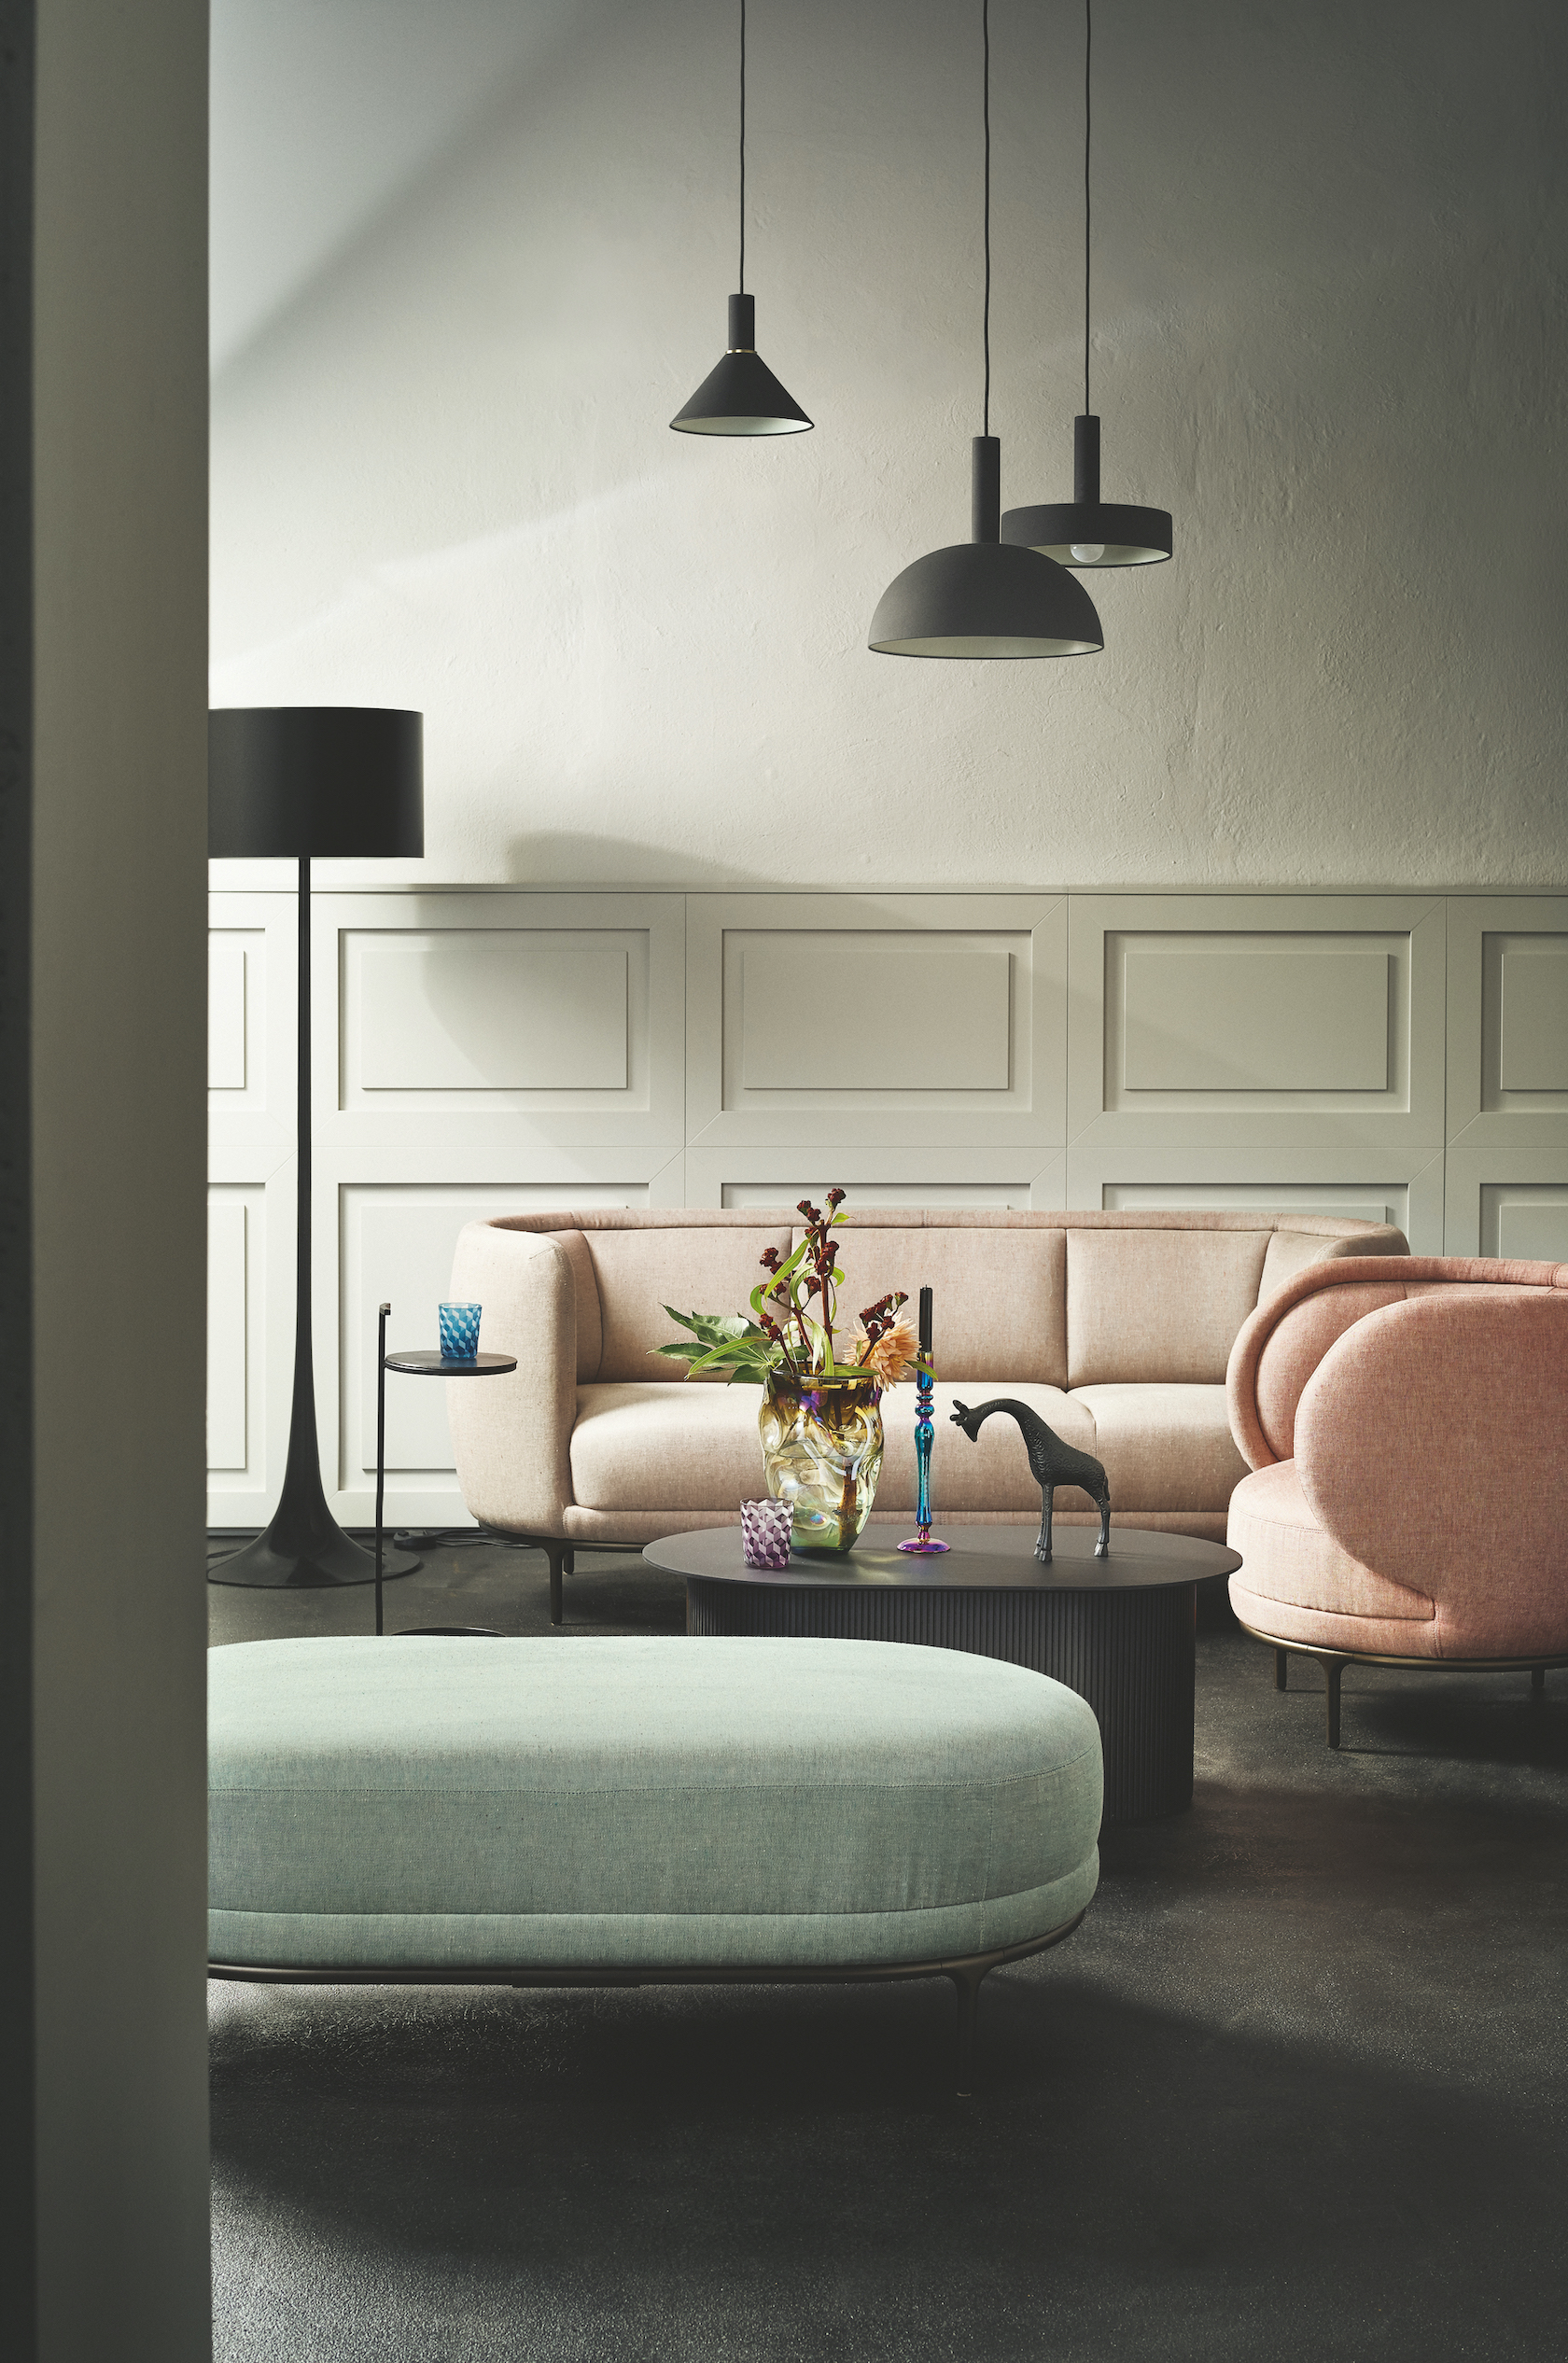 Rosa und grüne Polsterstoffe von Libeco auf Wittmann Möbeln mit Landhaus-Wand-Vertäfelung